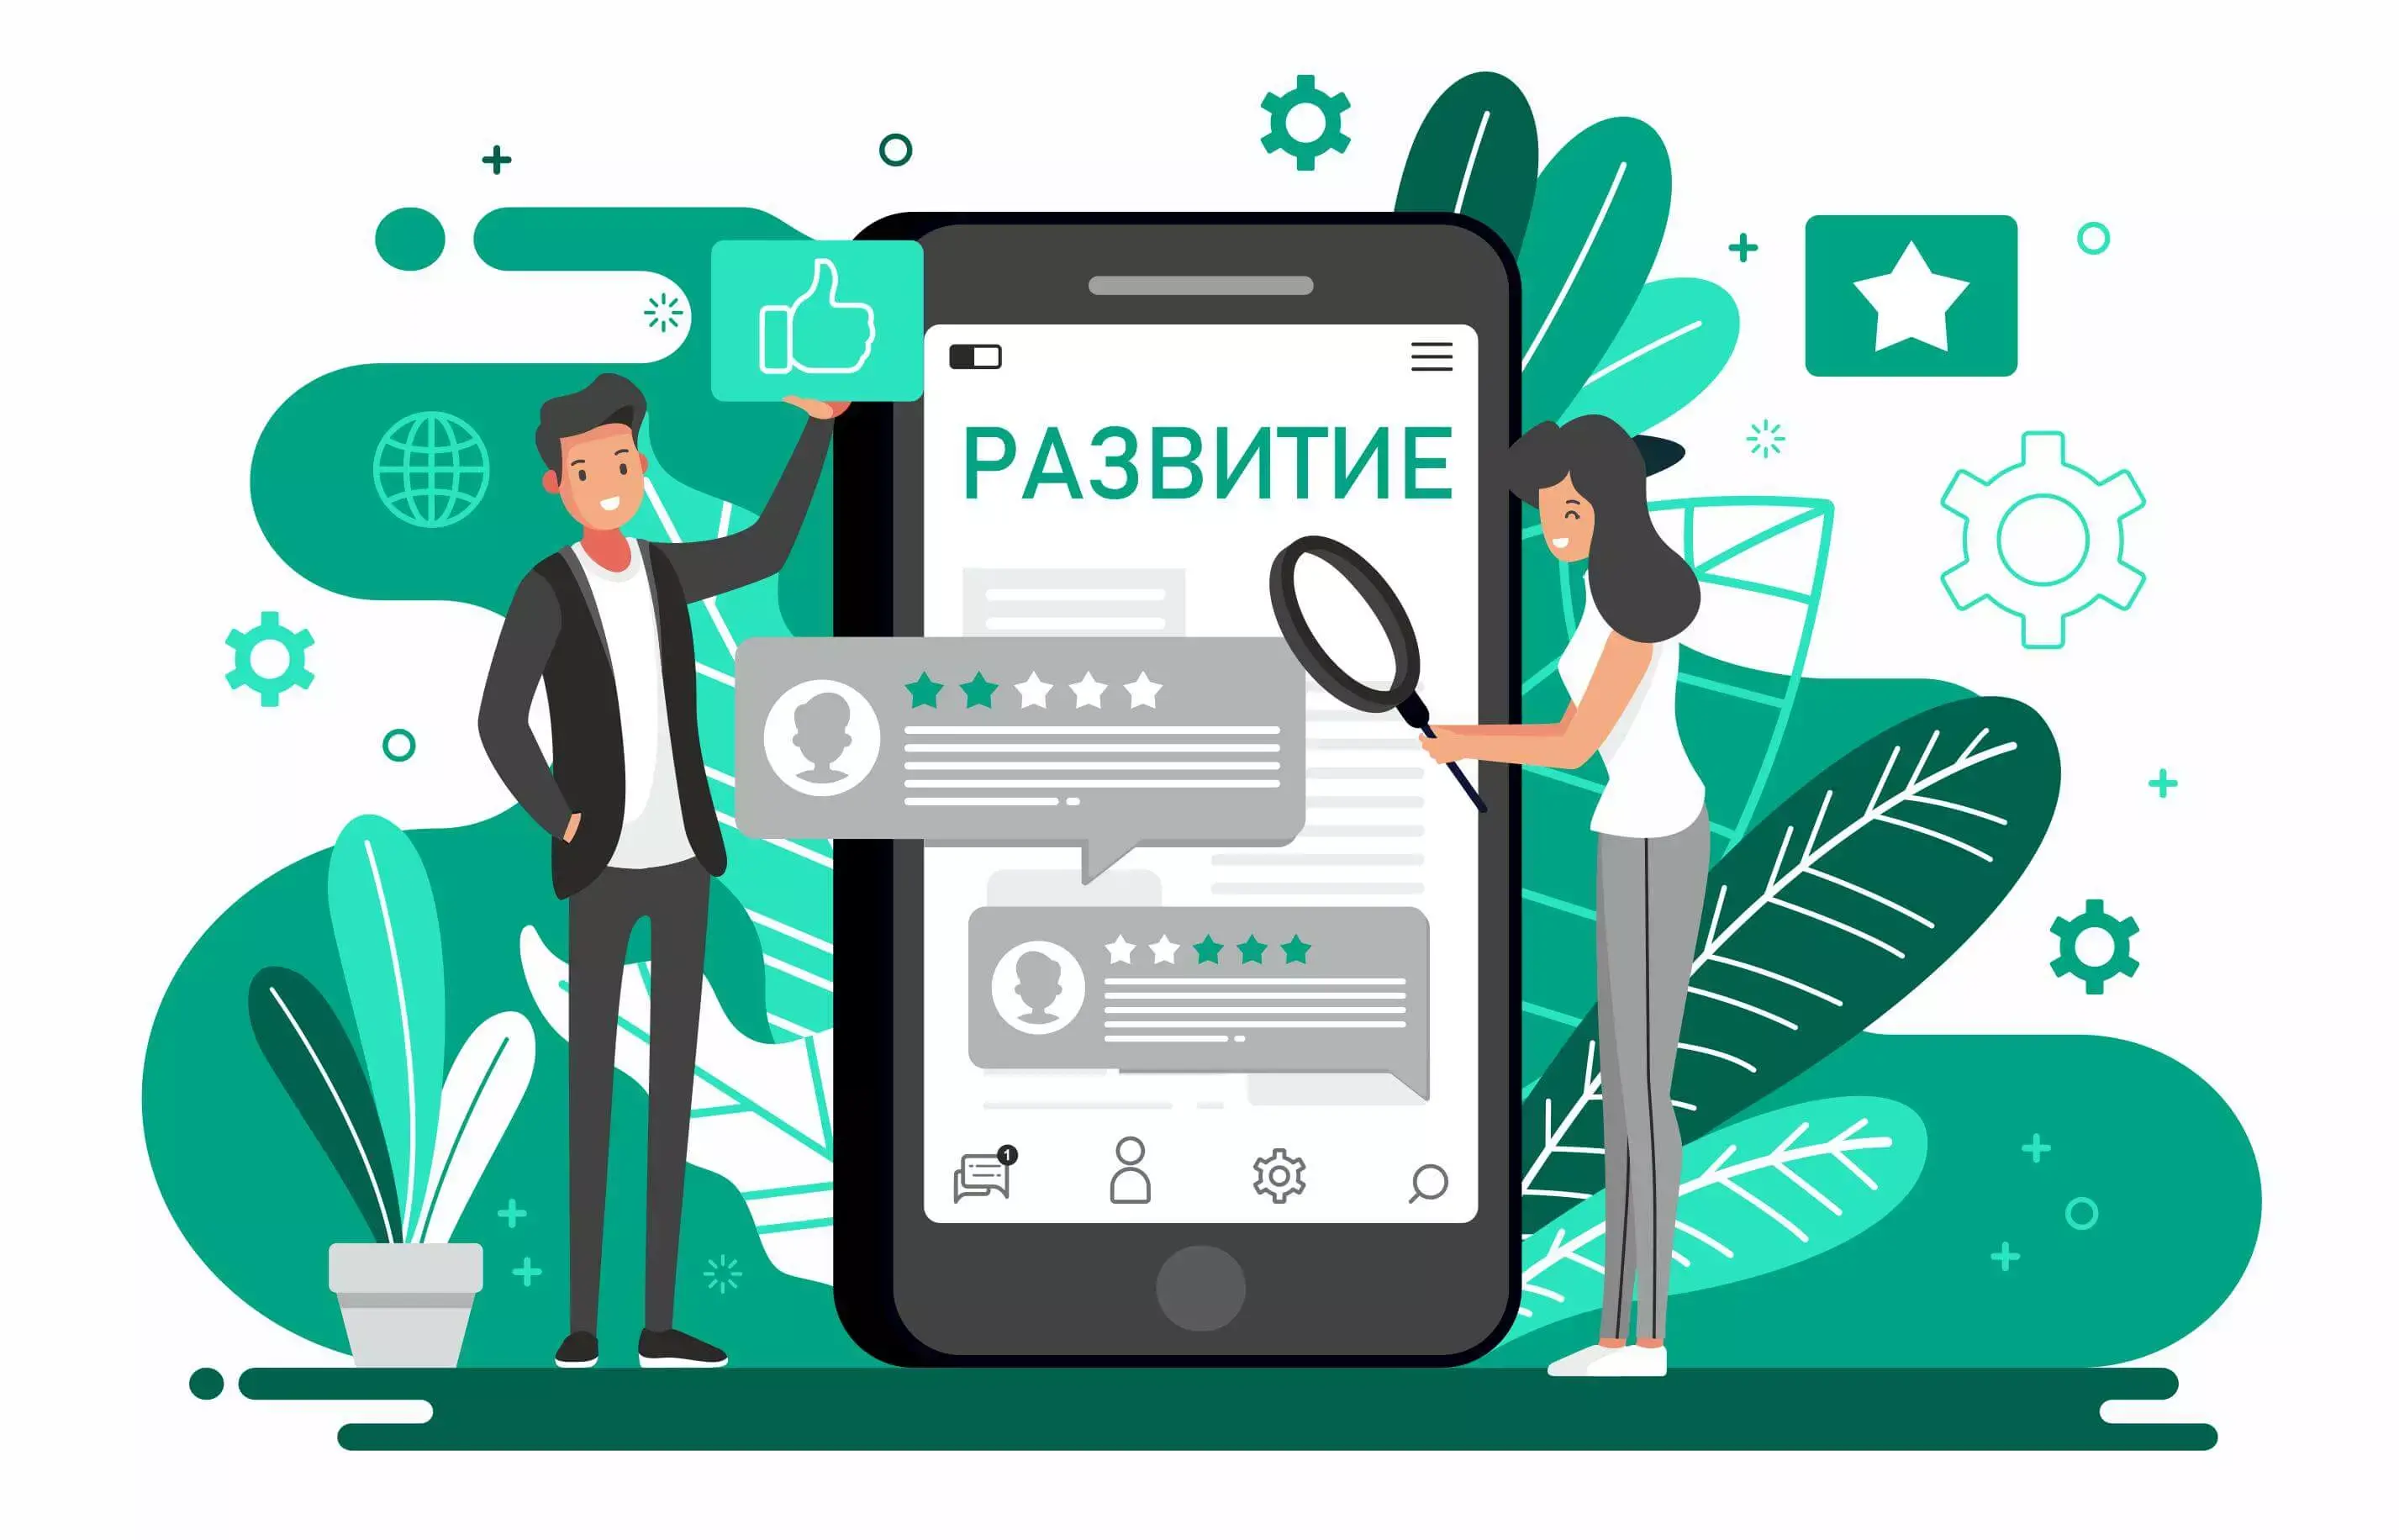 Https sferum ru call link g. Приложение иллюстрация. Будущее Разработчик мобильных приложений. Сферум платформа. Мобильное приложение для бизнеса.